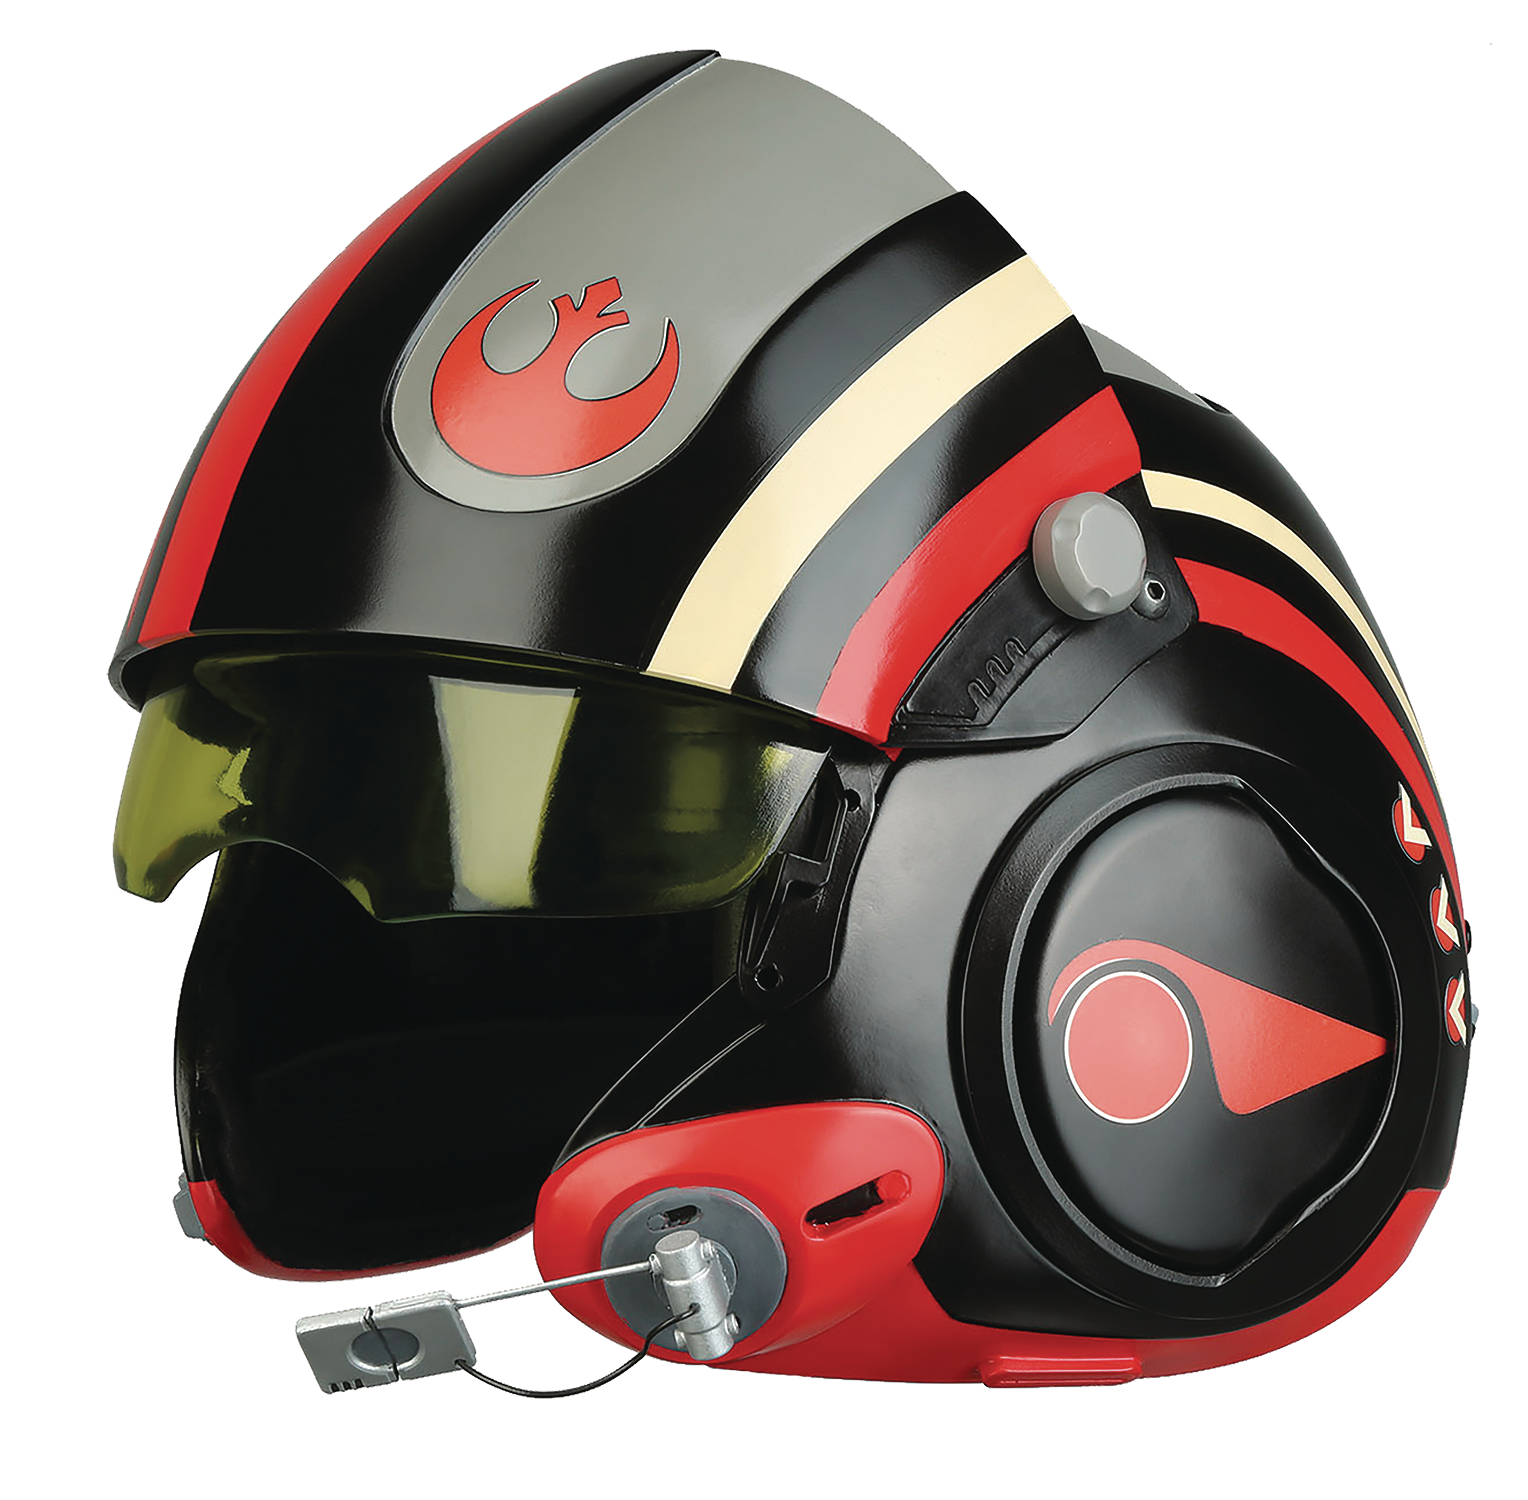 Уникальные шлемы пое. POE Dameron Star Wars шлем. По Дэмерон в шлеме. Star Wars Helmet Pilot. Auto x-7 Helmet.